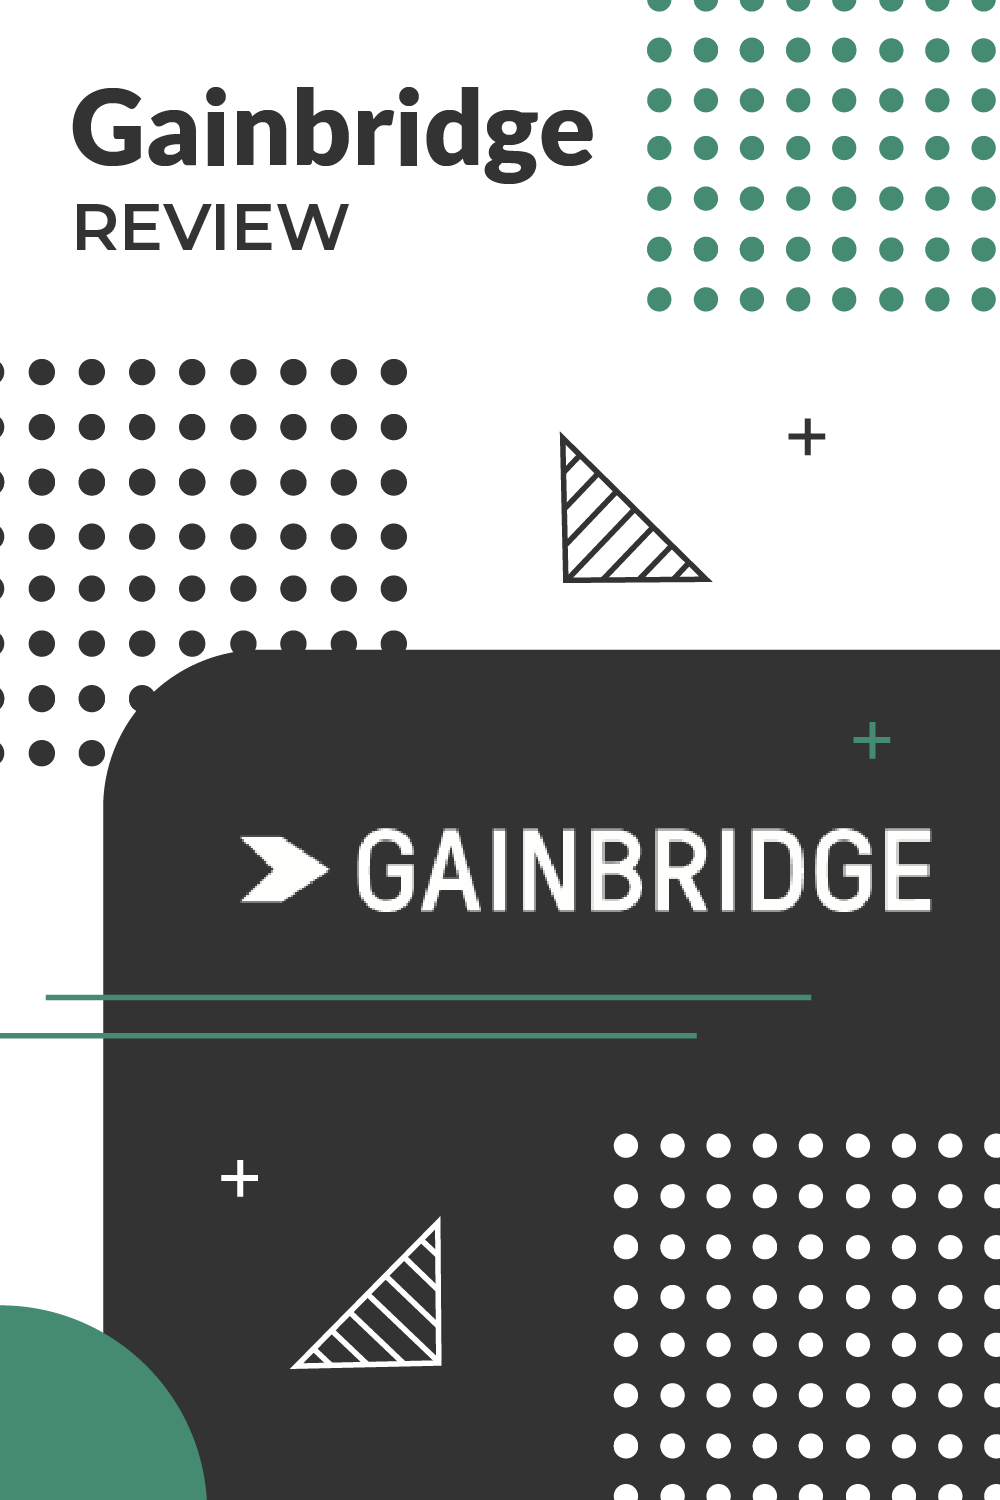 Gainbridge review pinterest image